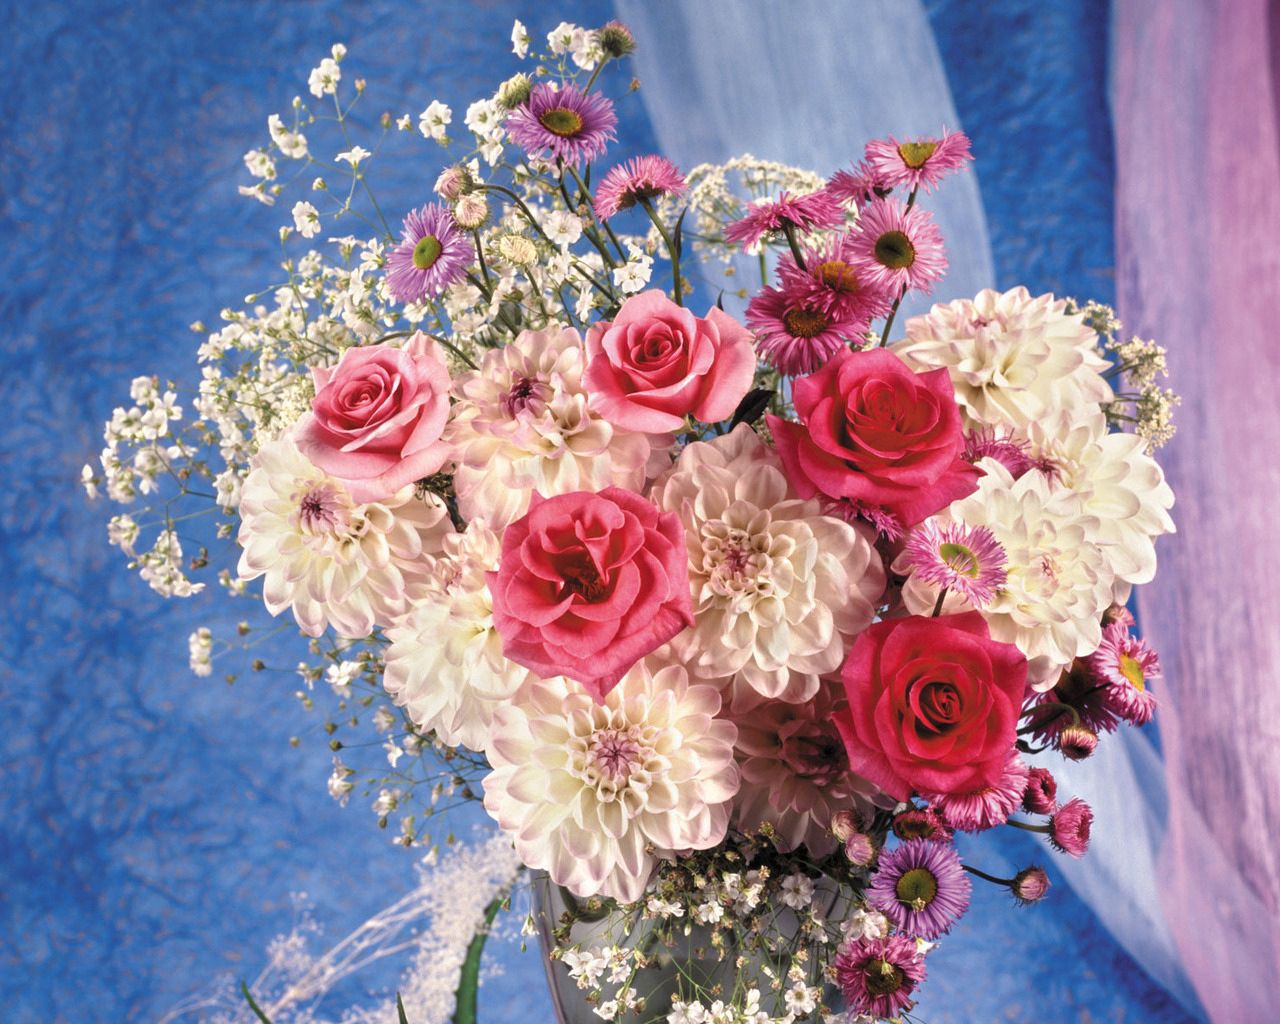 158149 免費下載壁紙 花卉, 玫瑰, 花束, 登记, 设计, 花瓶, 瓦萨, 大丽花, 圣乔治, 华丽的, 别致 屏保和圖片